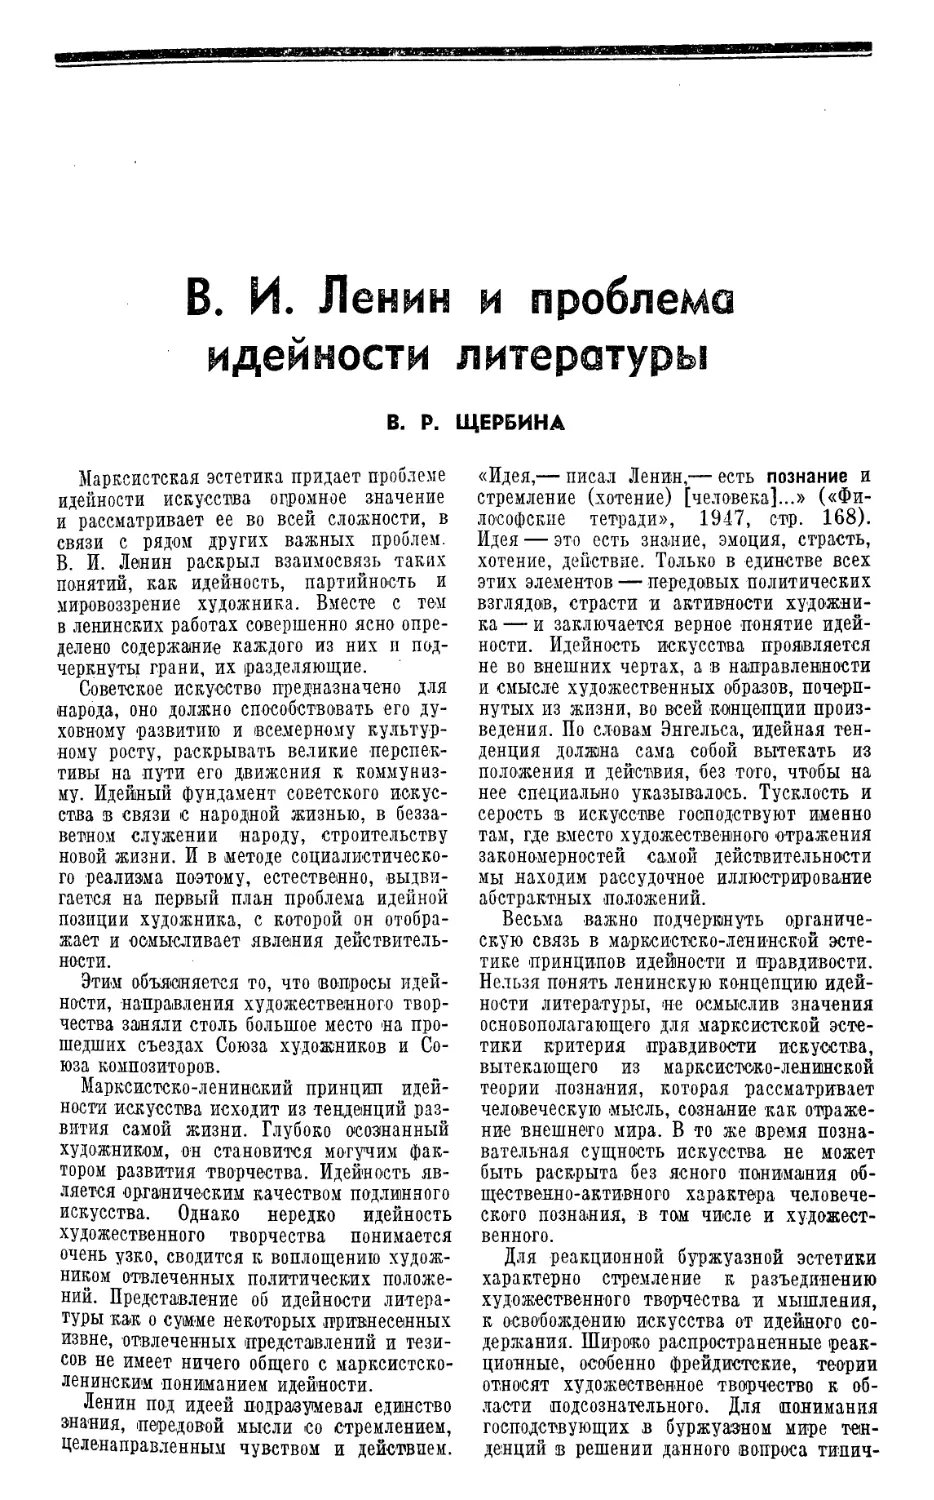 В. Р. Щербина — В. И. Ленин и проблема идейности литературы